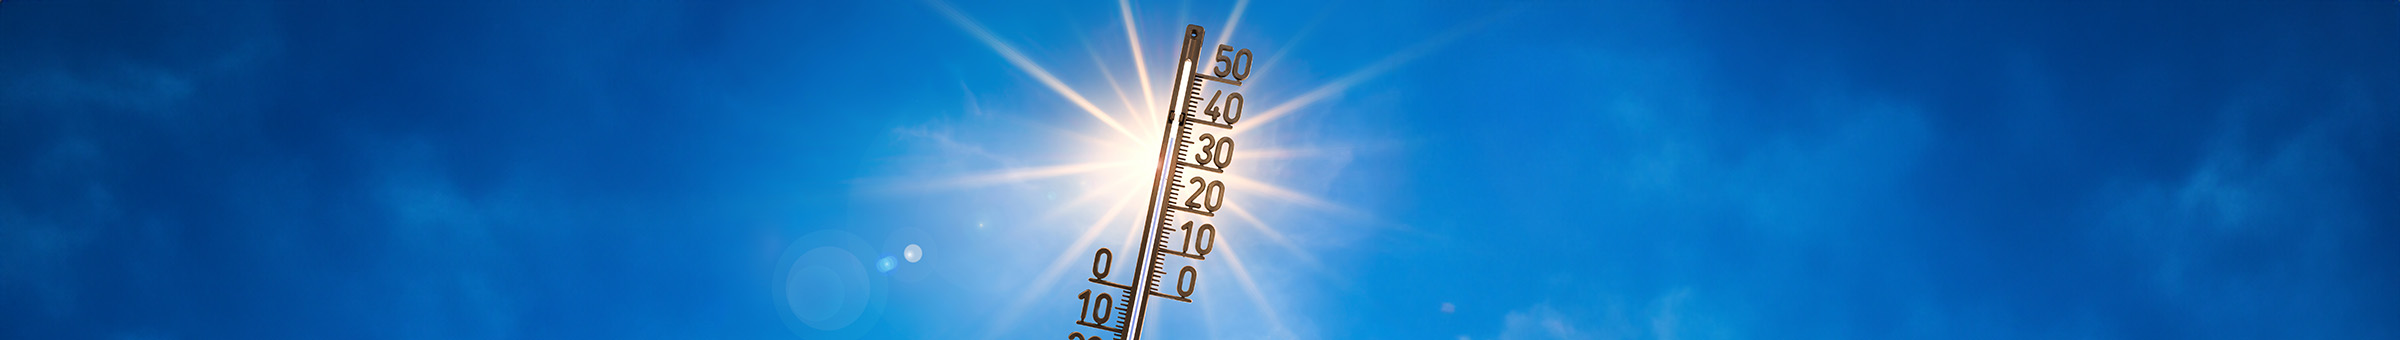 Ein Thermometer zeigt 35 Grad Celsius an. Dahinter strahlt die Sonne.